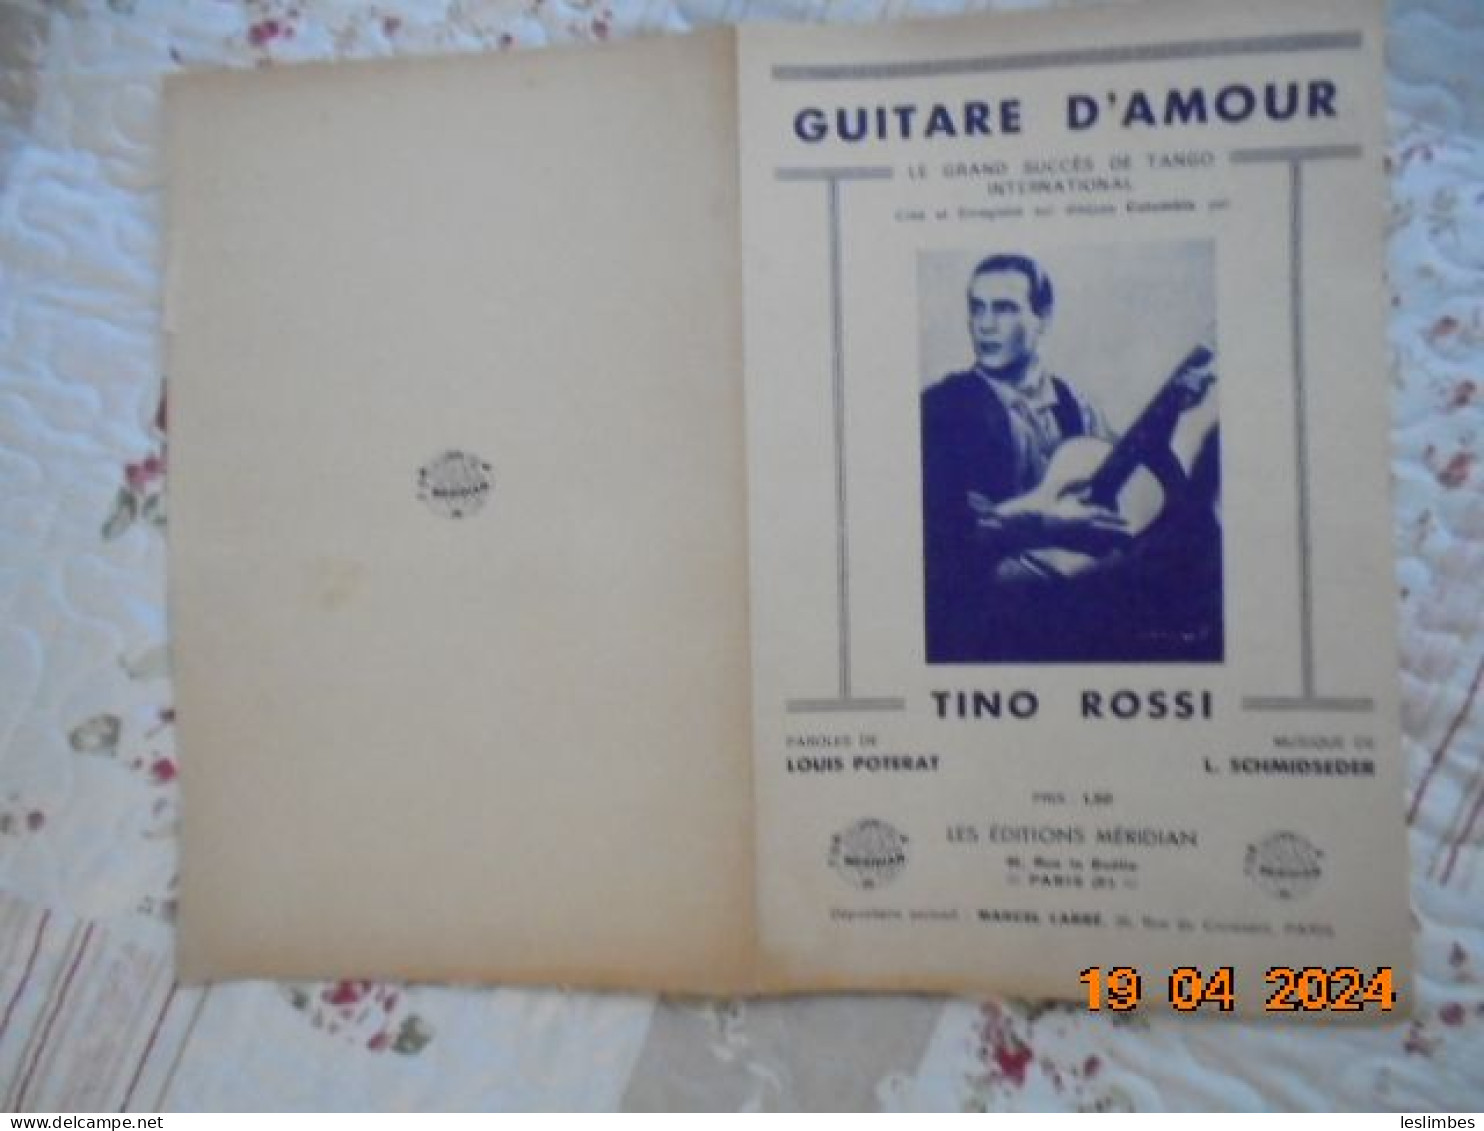 Guitare D'amour [partition] Louis Poterat, L. Schmidseder - Les Editions Meridian 1935 - Partitions Musicales Anciennes